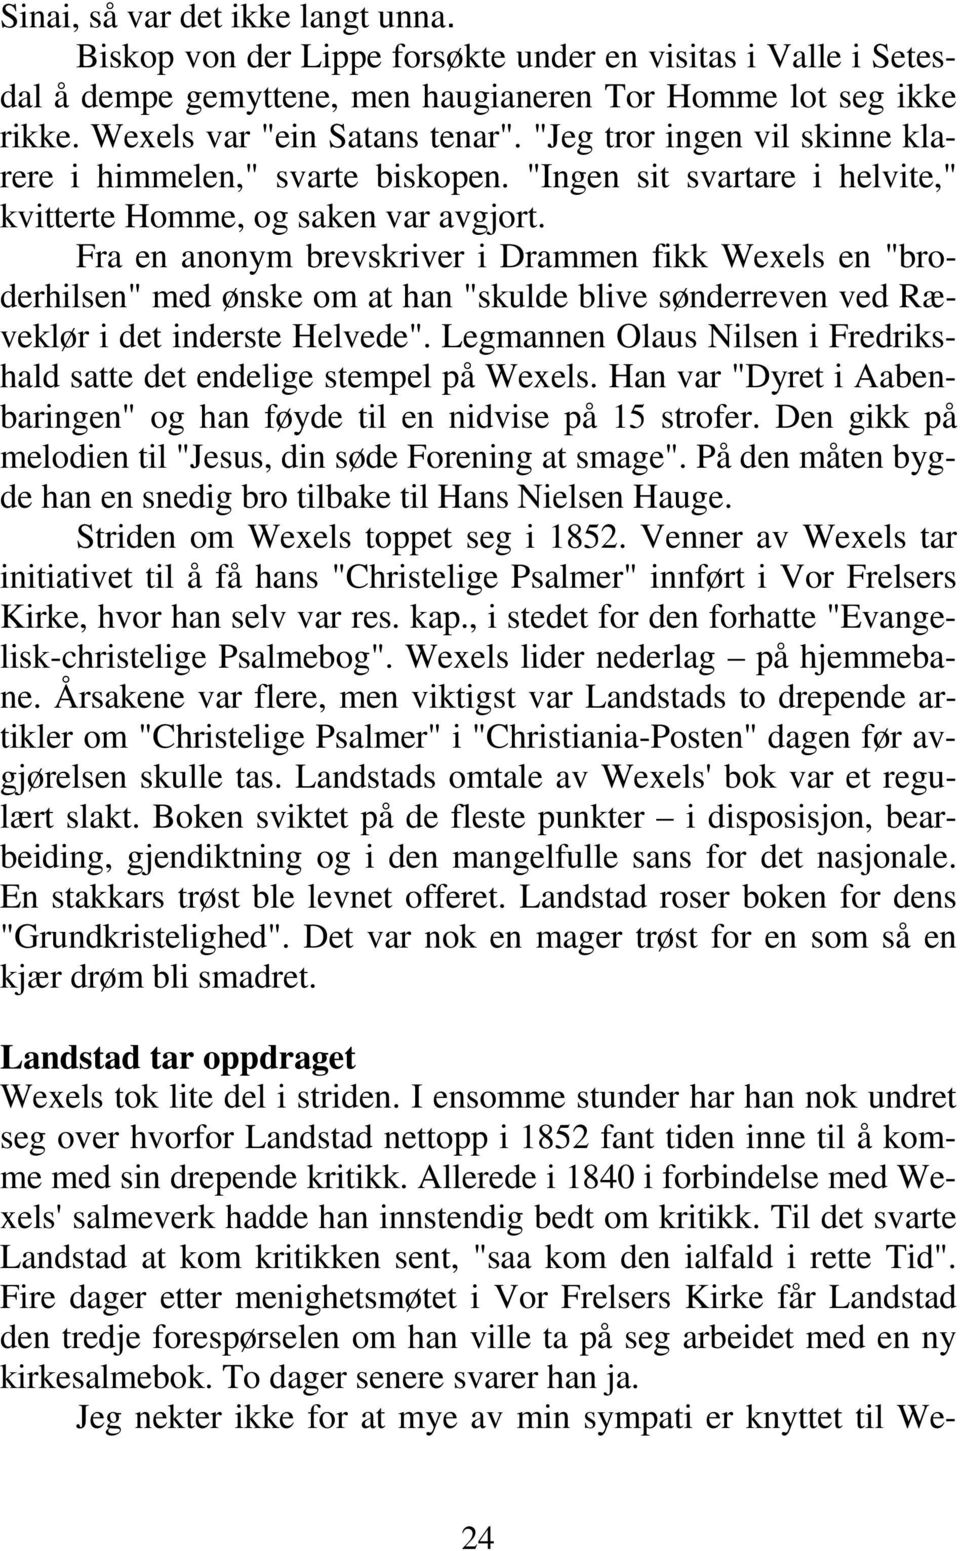 Fra en anonym brevskriver i Drammen fikk Wexels en "broderhilsen" med ønske om at han "skulde blive sønderreven ved Ræveklør i det inderste Helvede".